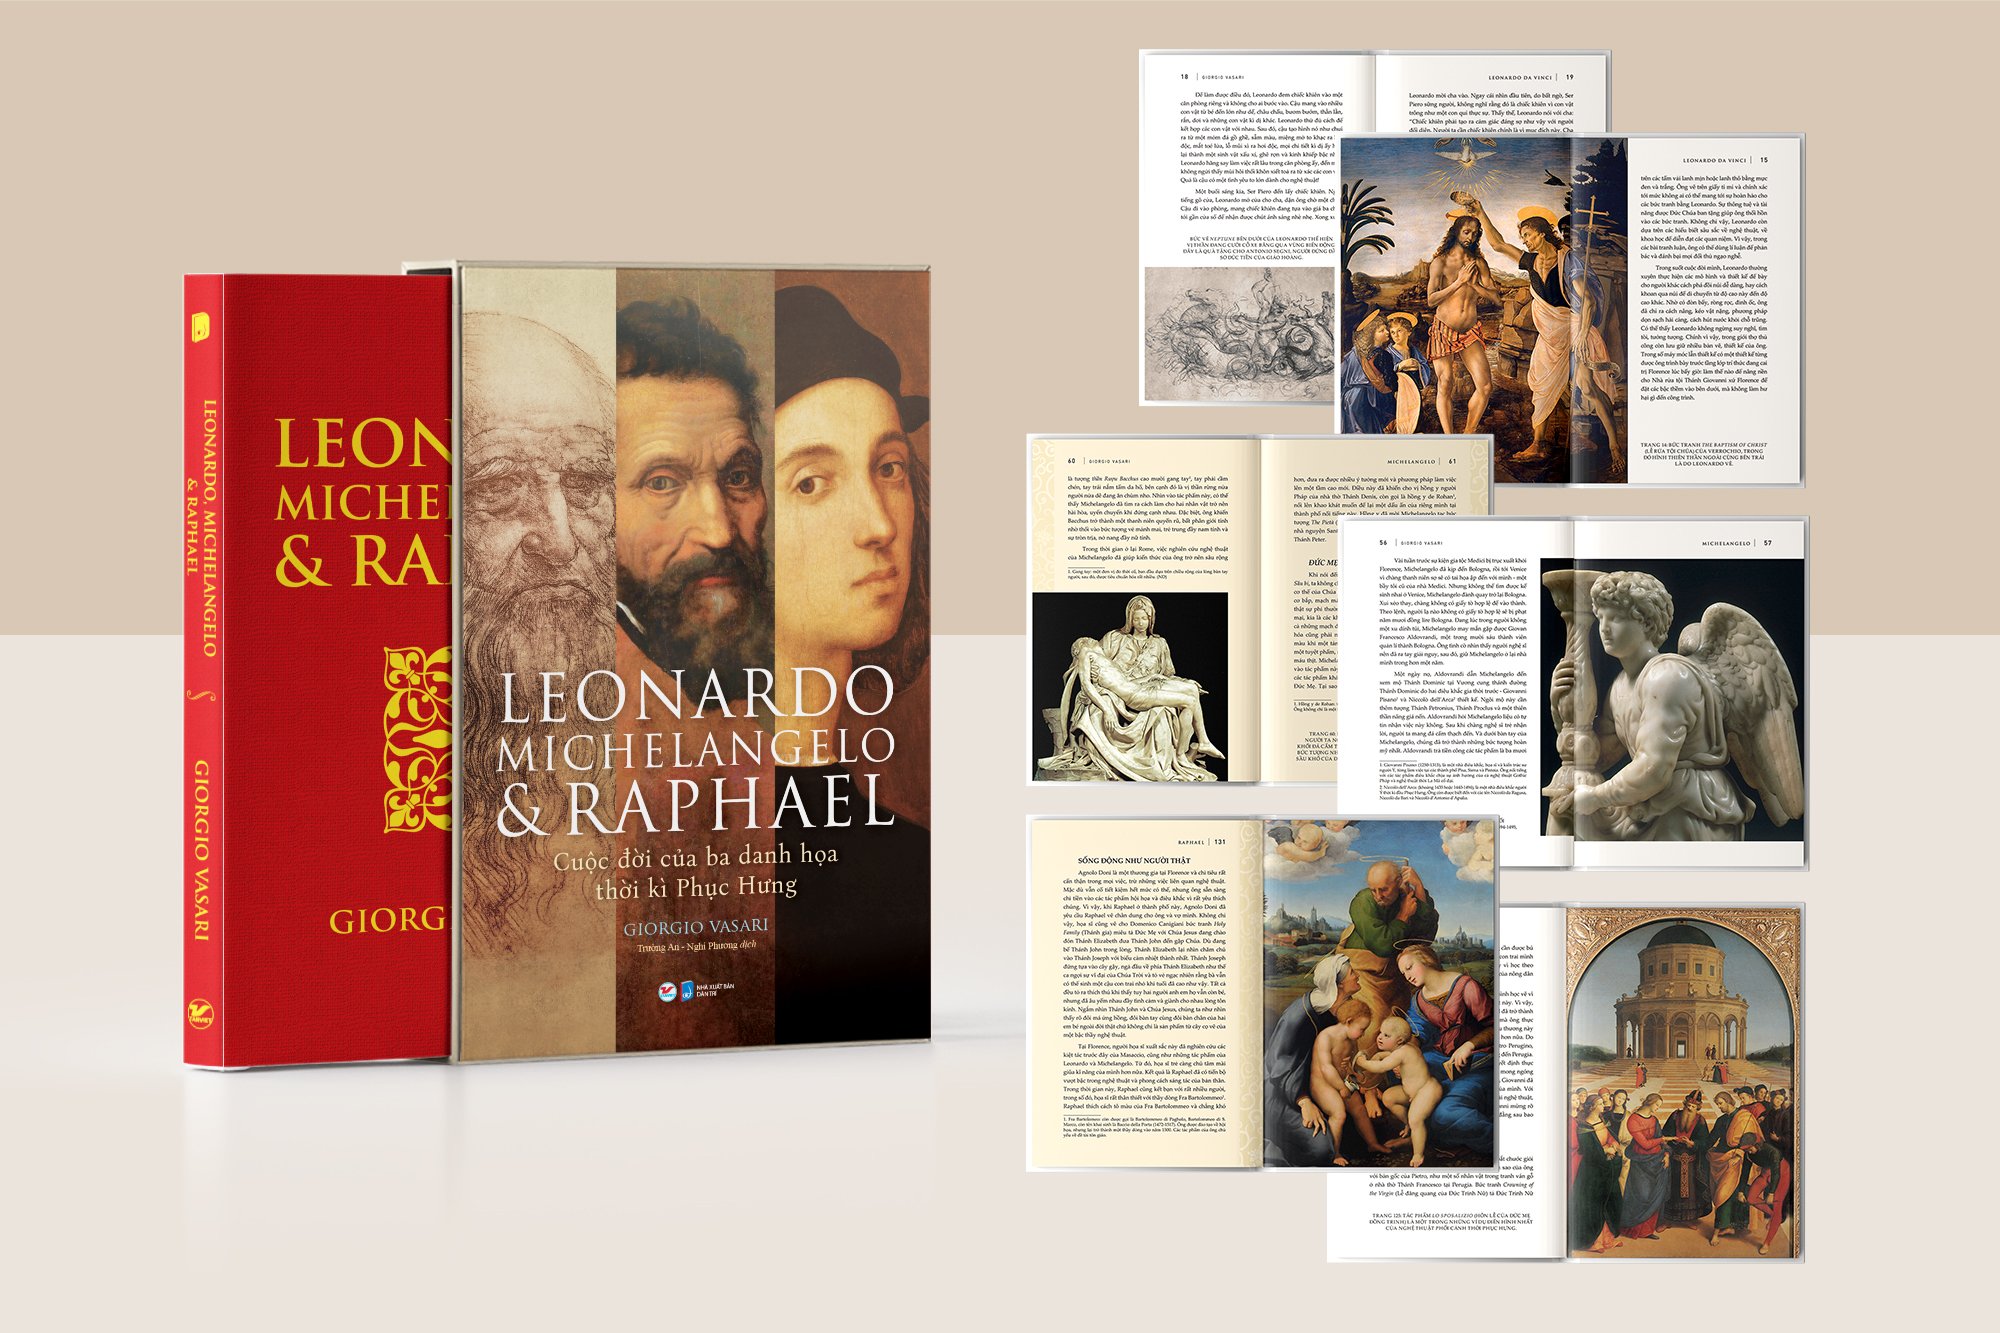 BỘ SÁCH DELUXE BOOKS (BỘ SÁCH SANG TRỌNG) - Leonardo, Michelangelo & Raphael - Cuộc đời của ba danh họa thời kì Phục Hưng